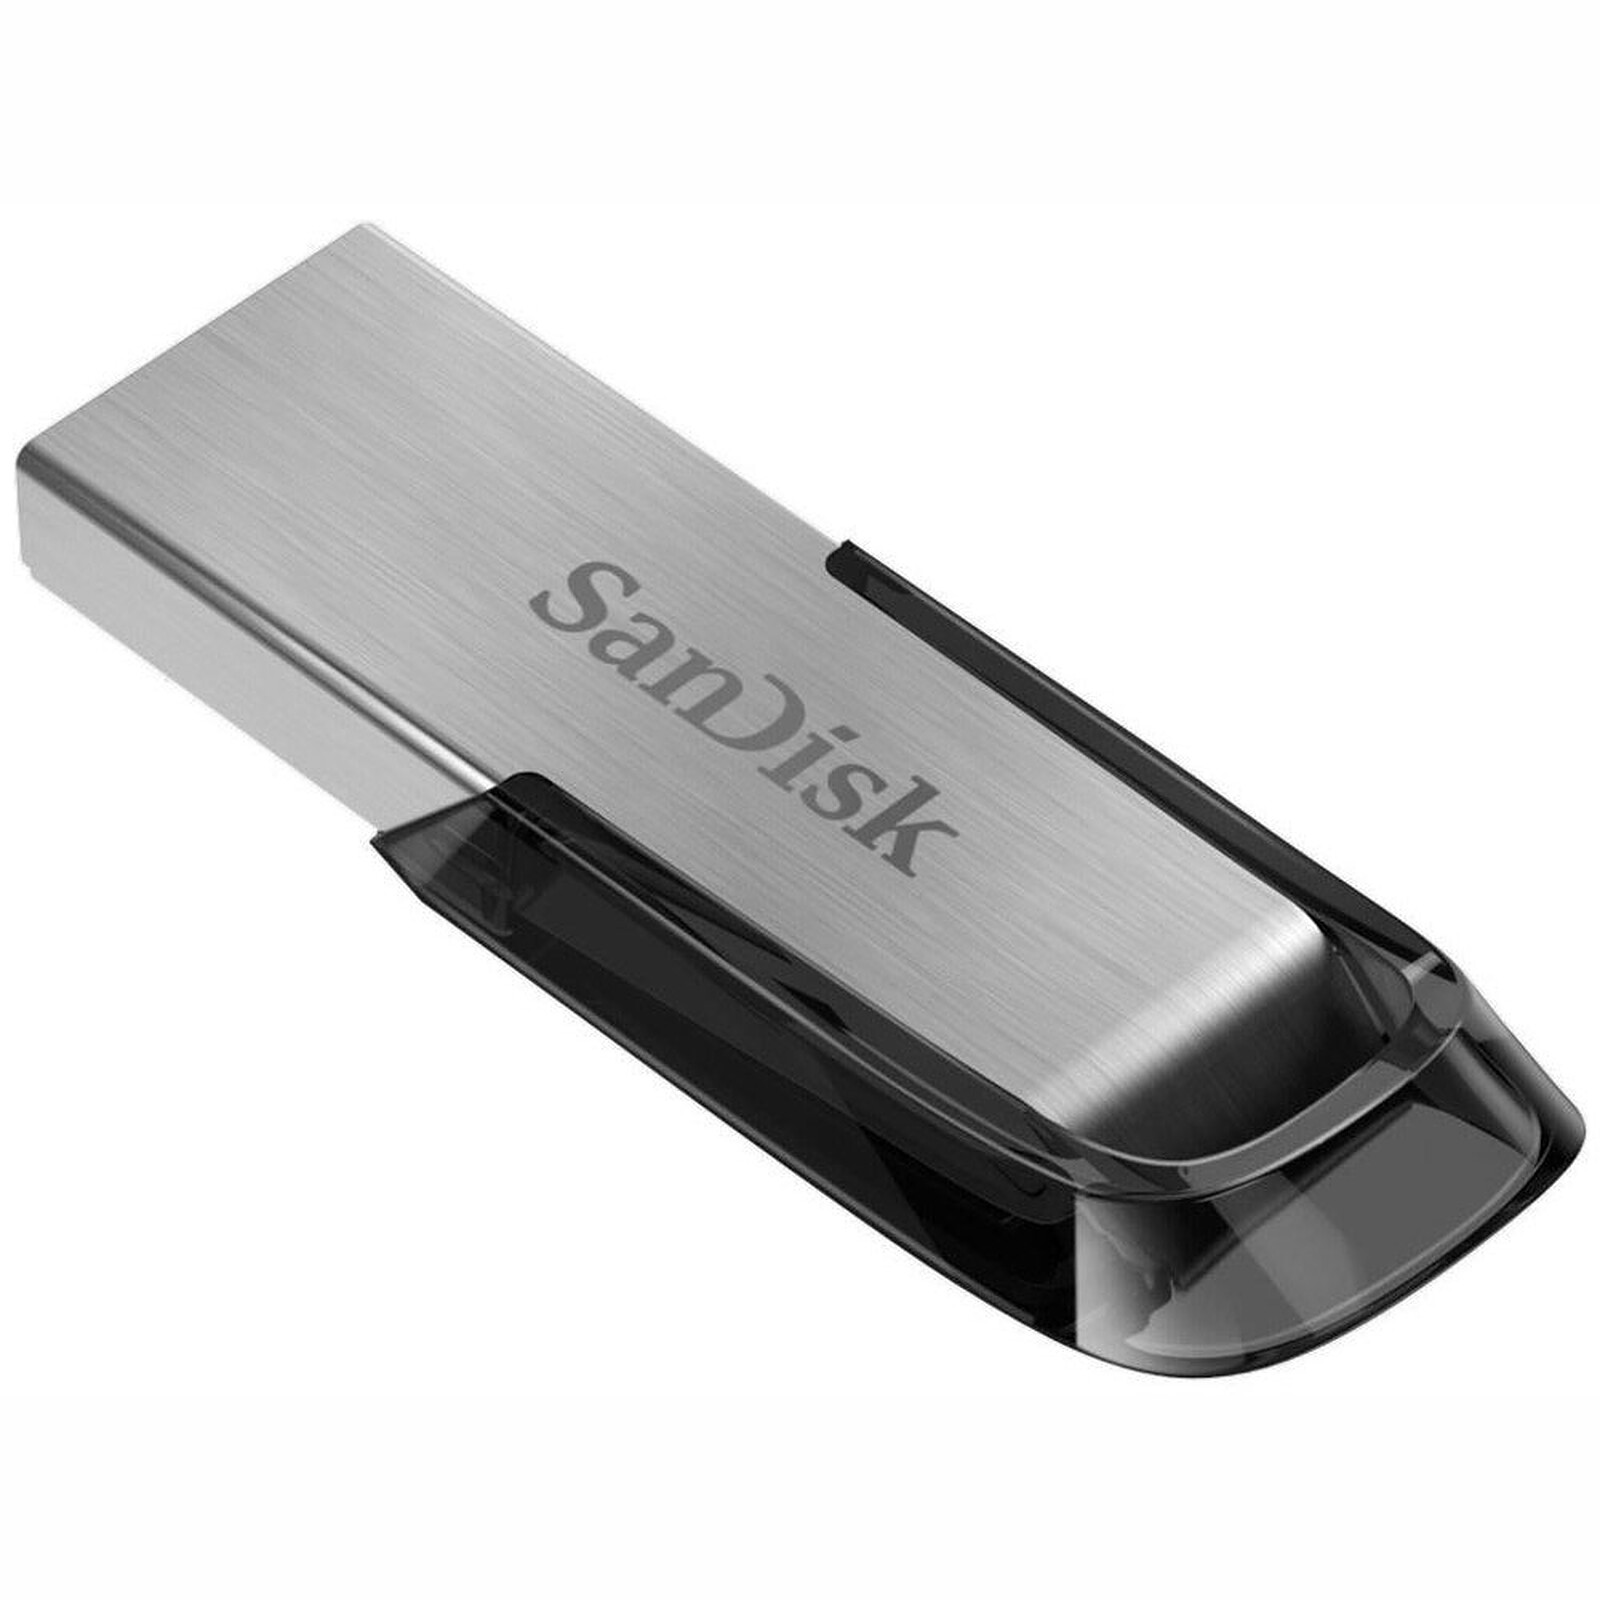 SanDisk Ultra Luxe 128 Go - Clé USB - LDLC